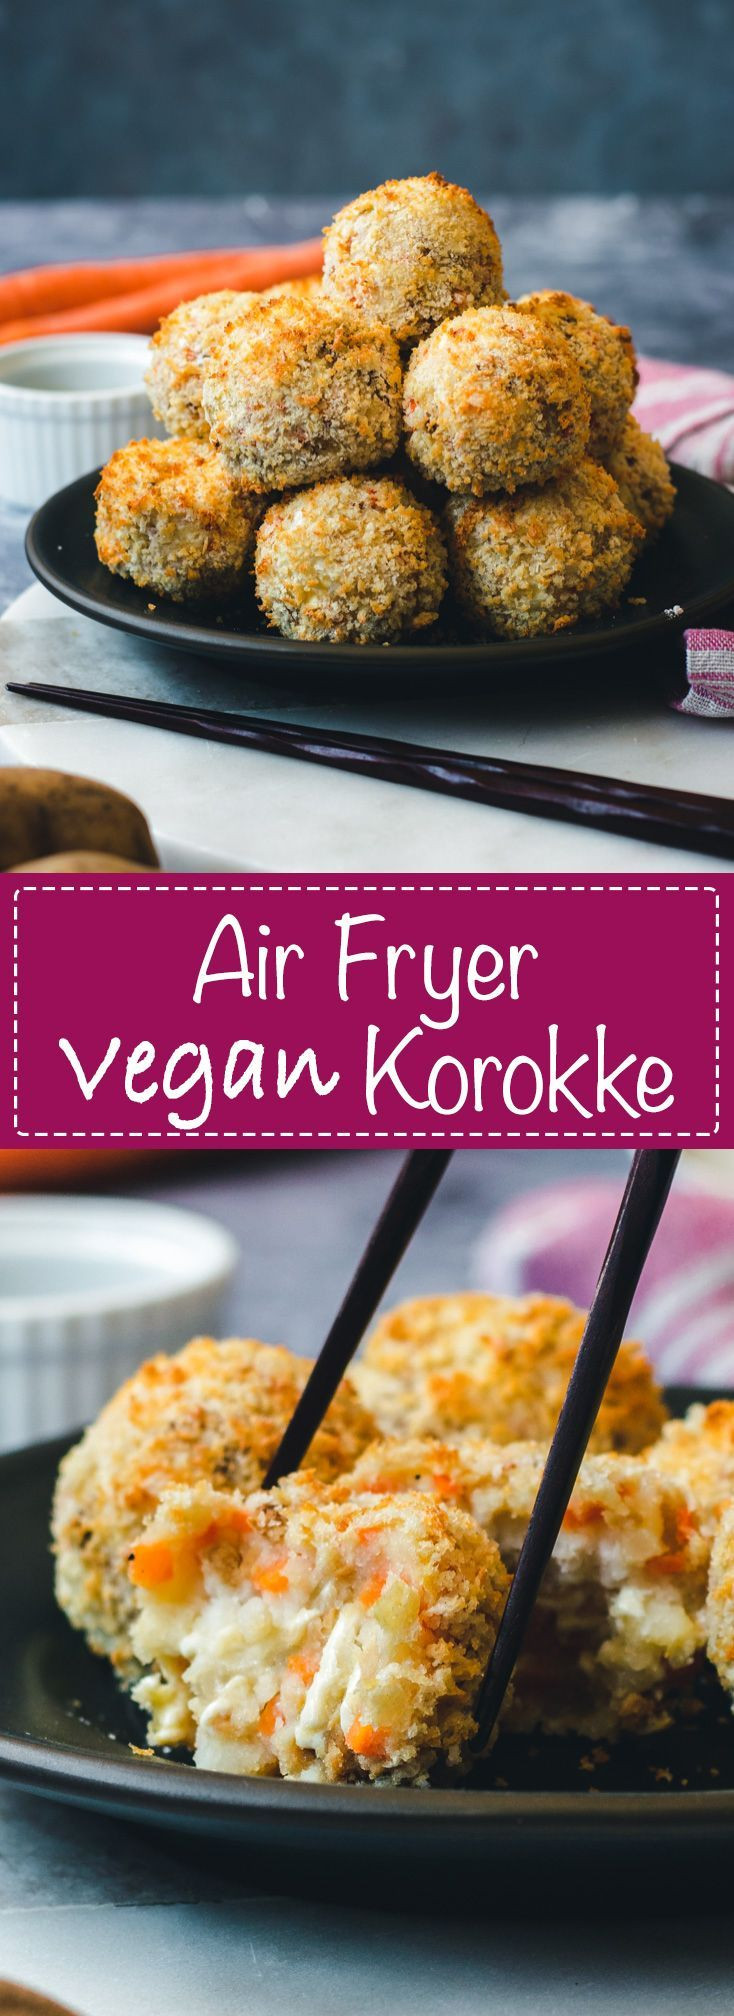 Air Fryer Ground Beef Recipes
 Air Fryer Vegan Korokke Recipe